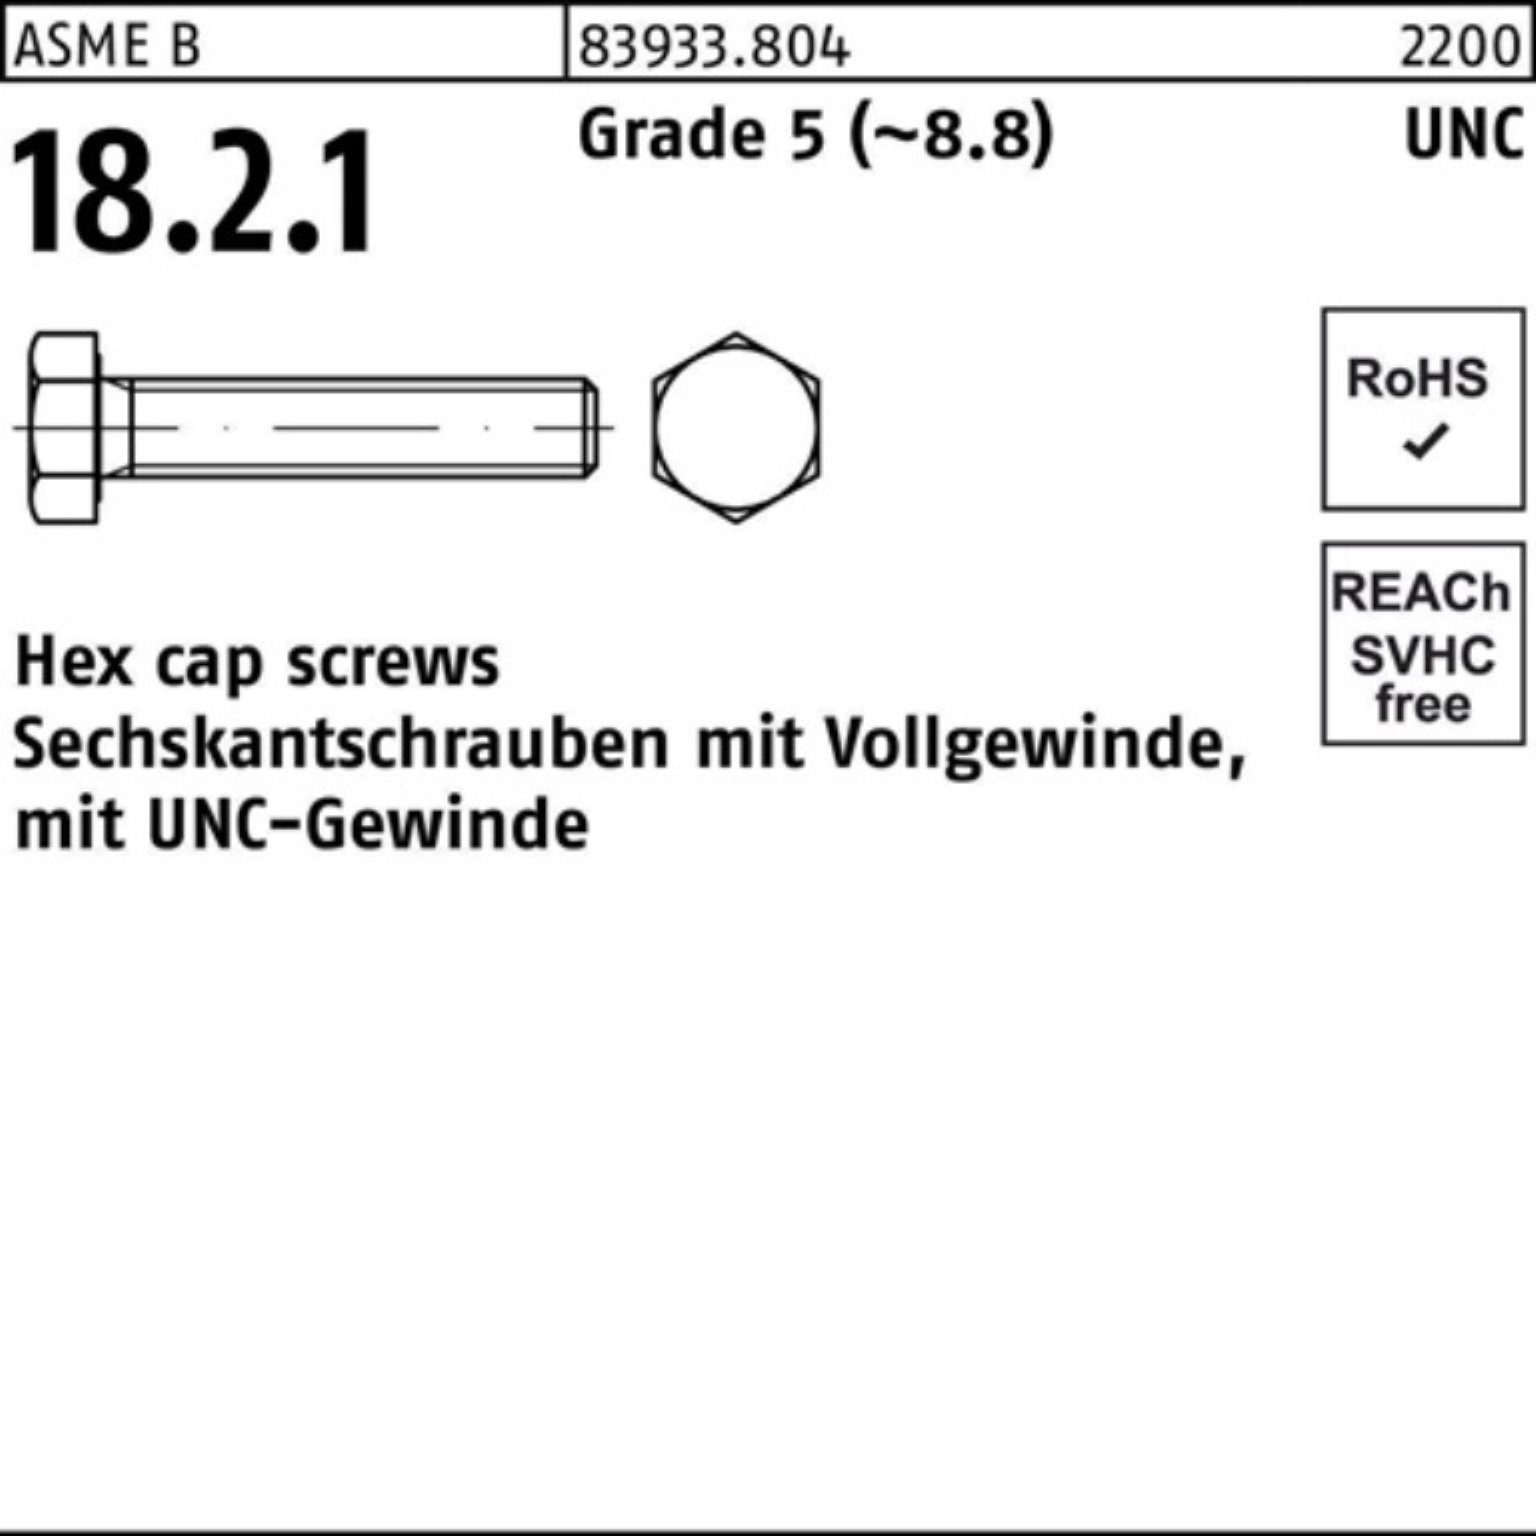 Pack VG 5 UNC-Gewinde 100er R 1/2 3/4x Sechskantschraube 1 Sechskantschraube Reyher 83933 Grade